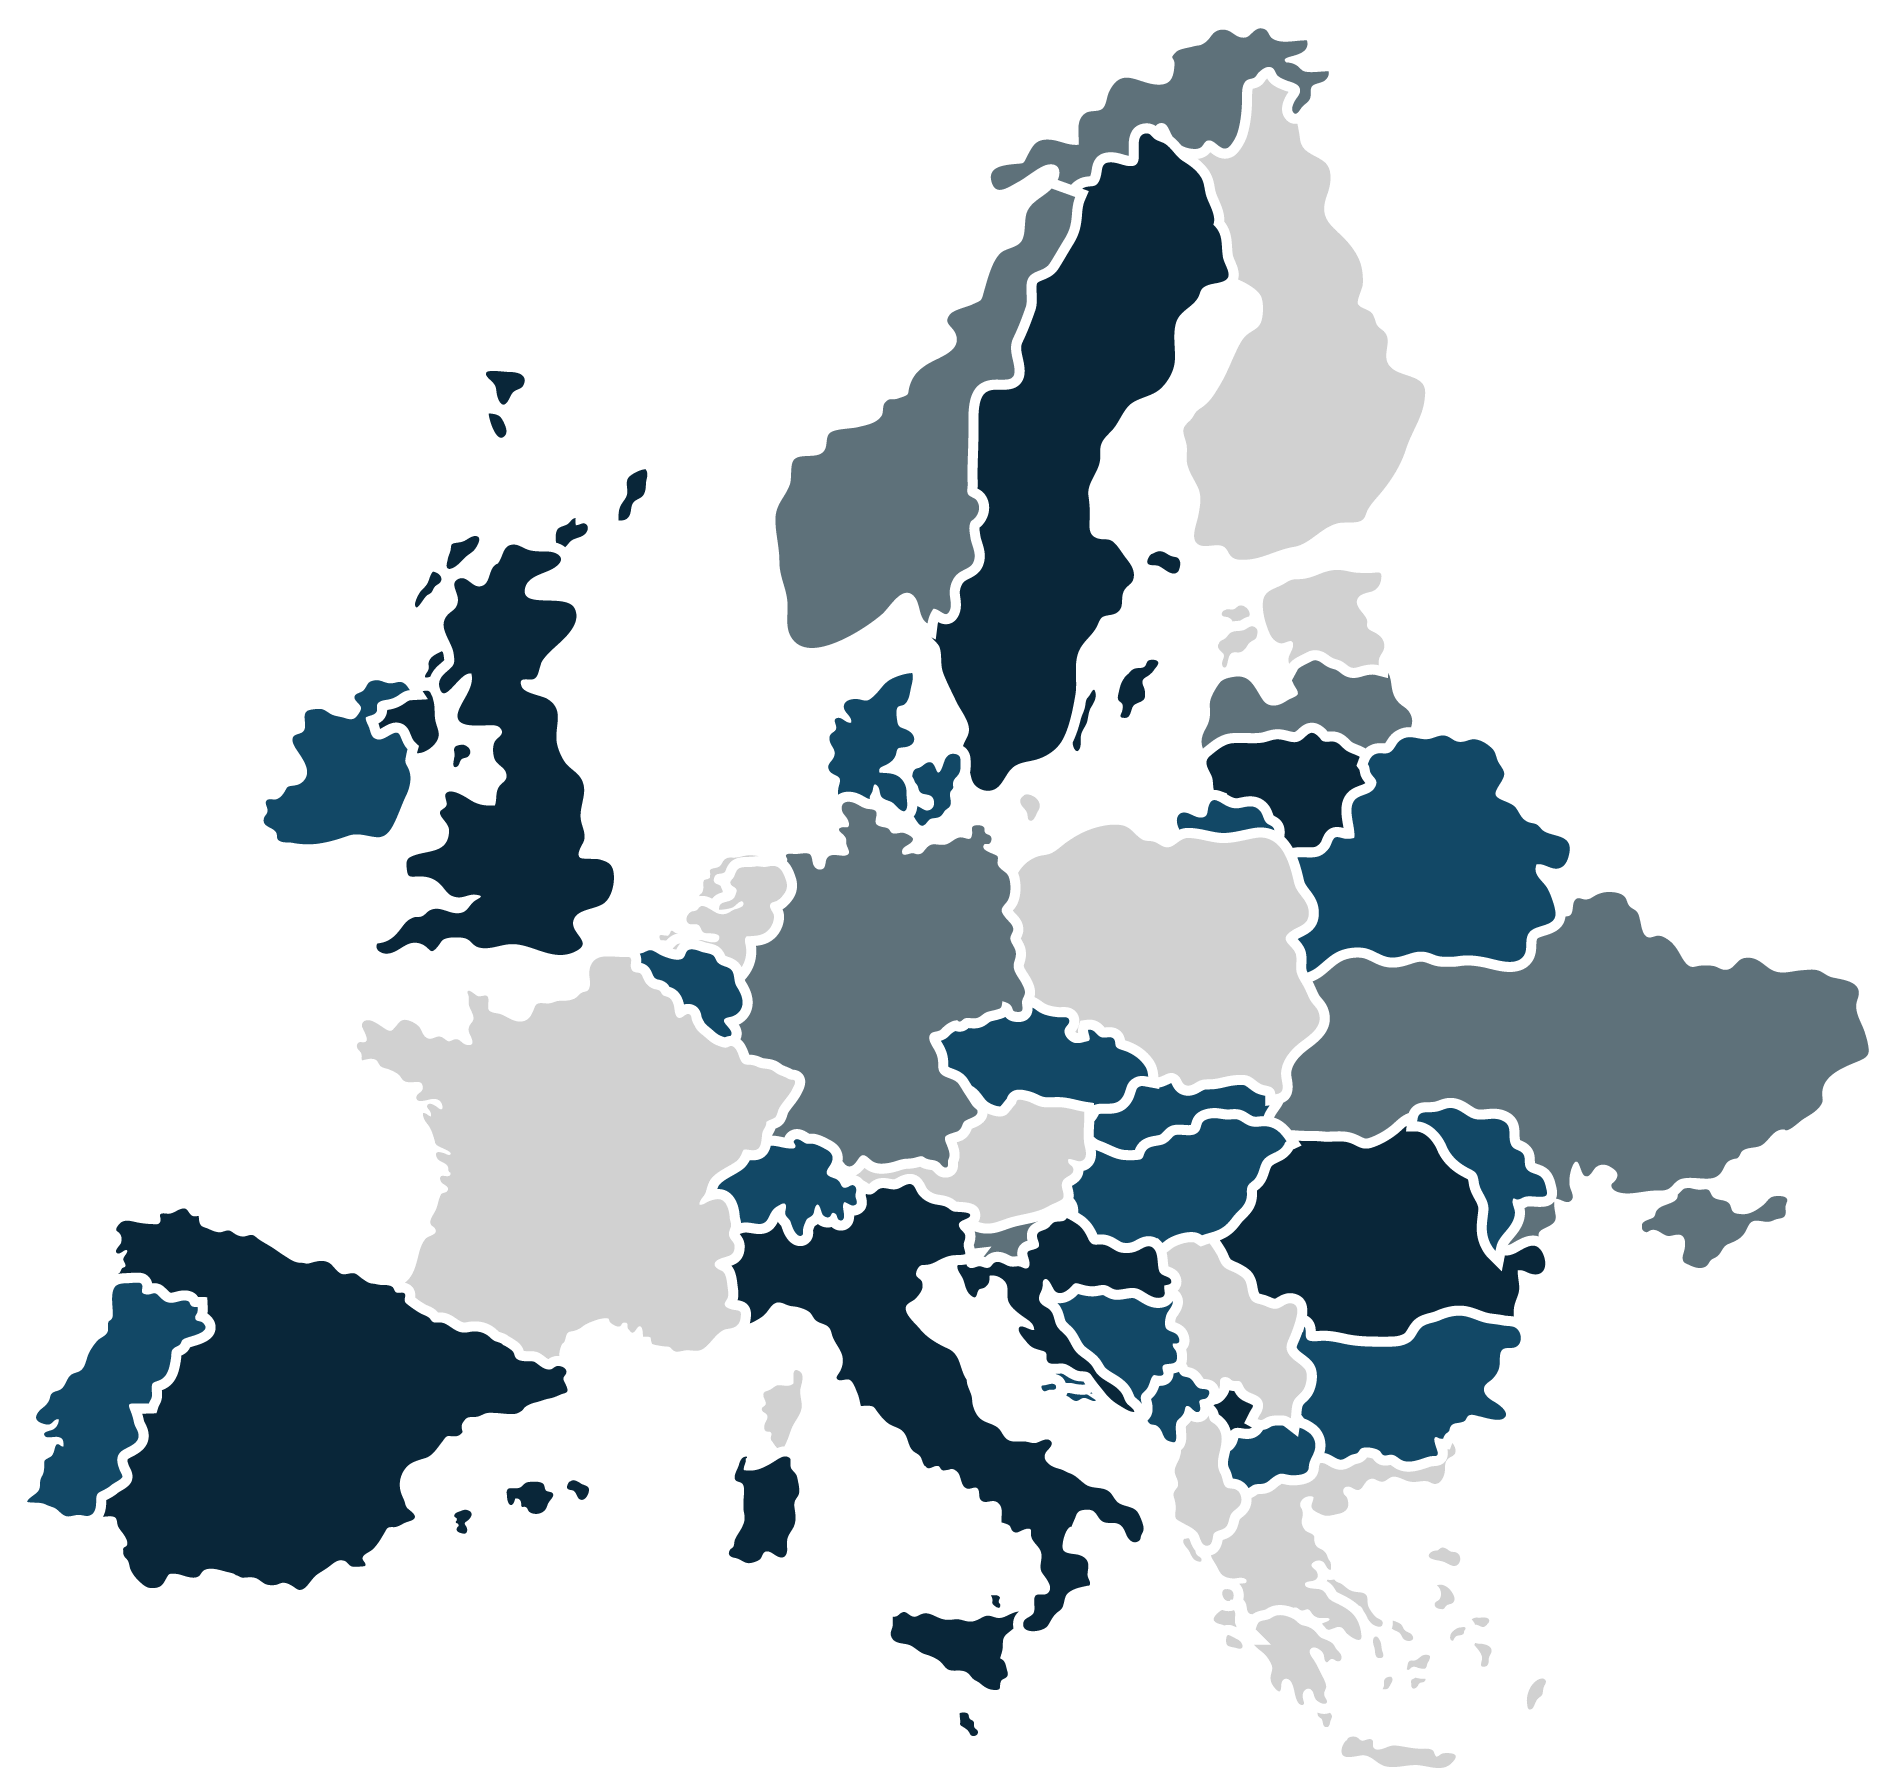 Europe Hemp CBD Global